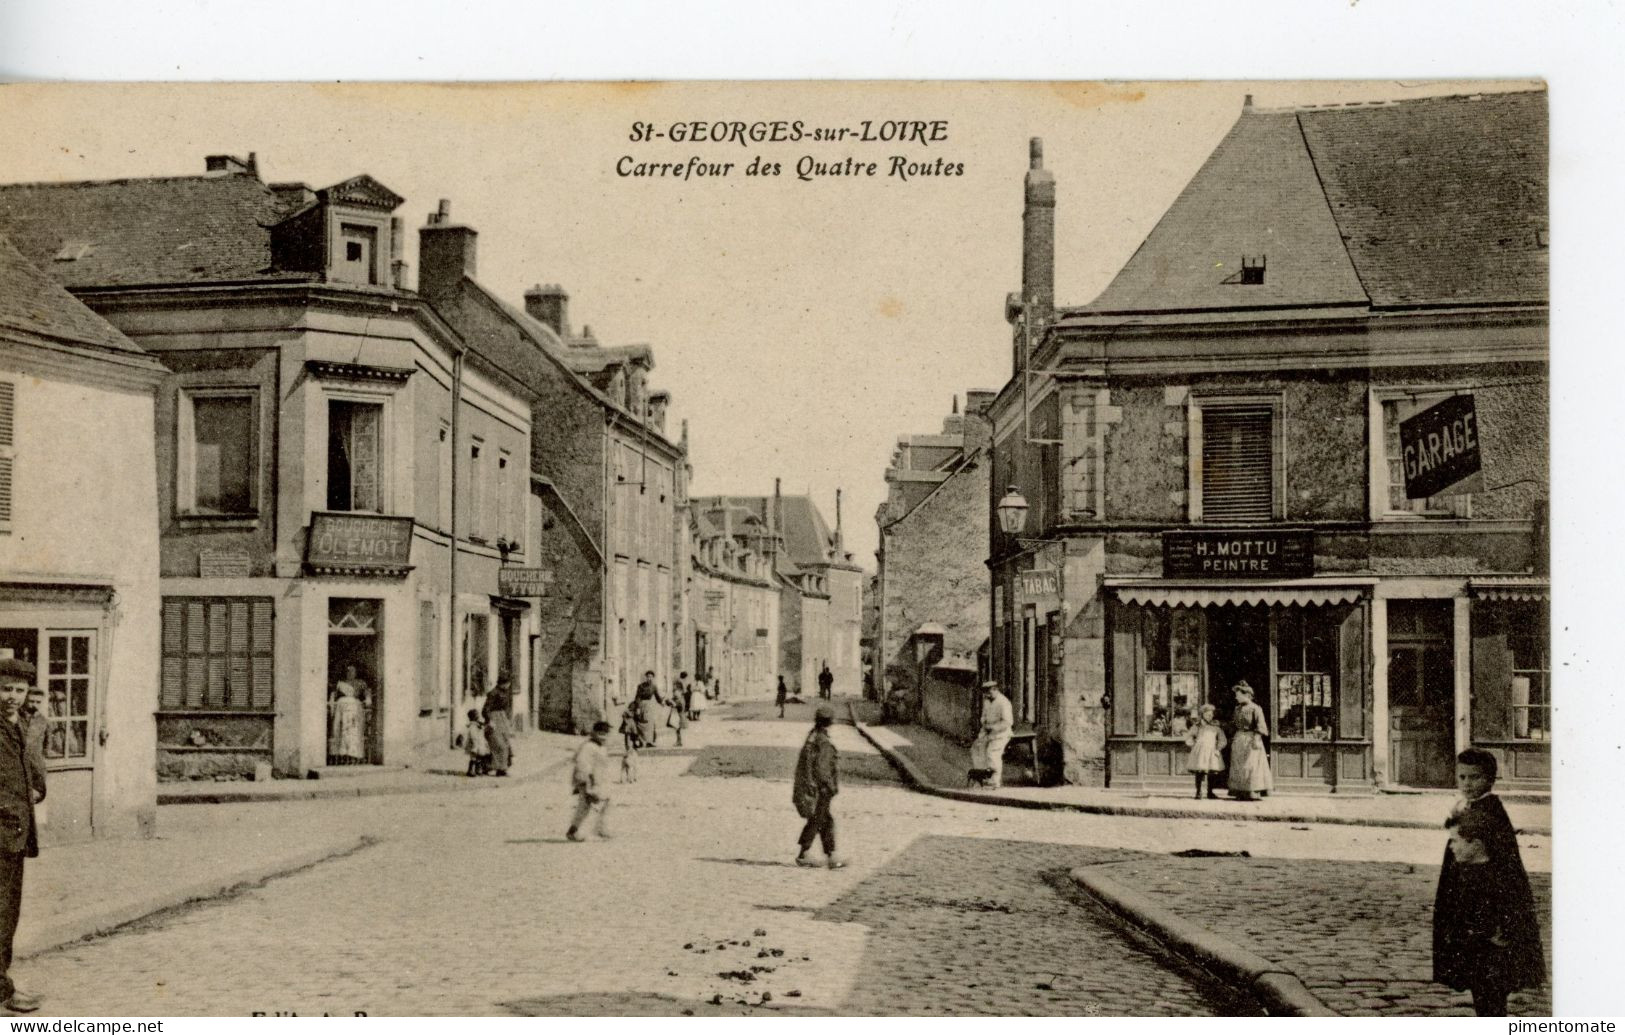 SAINT GEORGES SUR LOIRE CARREFOUR DES QUATRE ROUTES PEINTRE H. MOTTU GARAGE BOUCHERIE CLEMONT YVON - Saint Georges Sur Loire